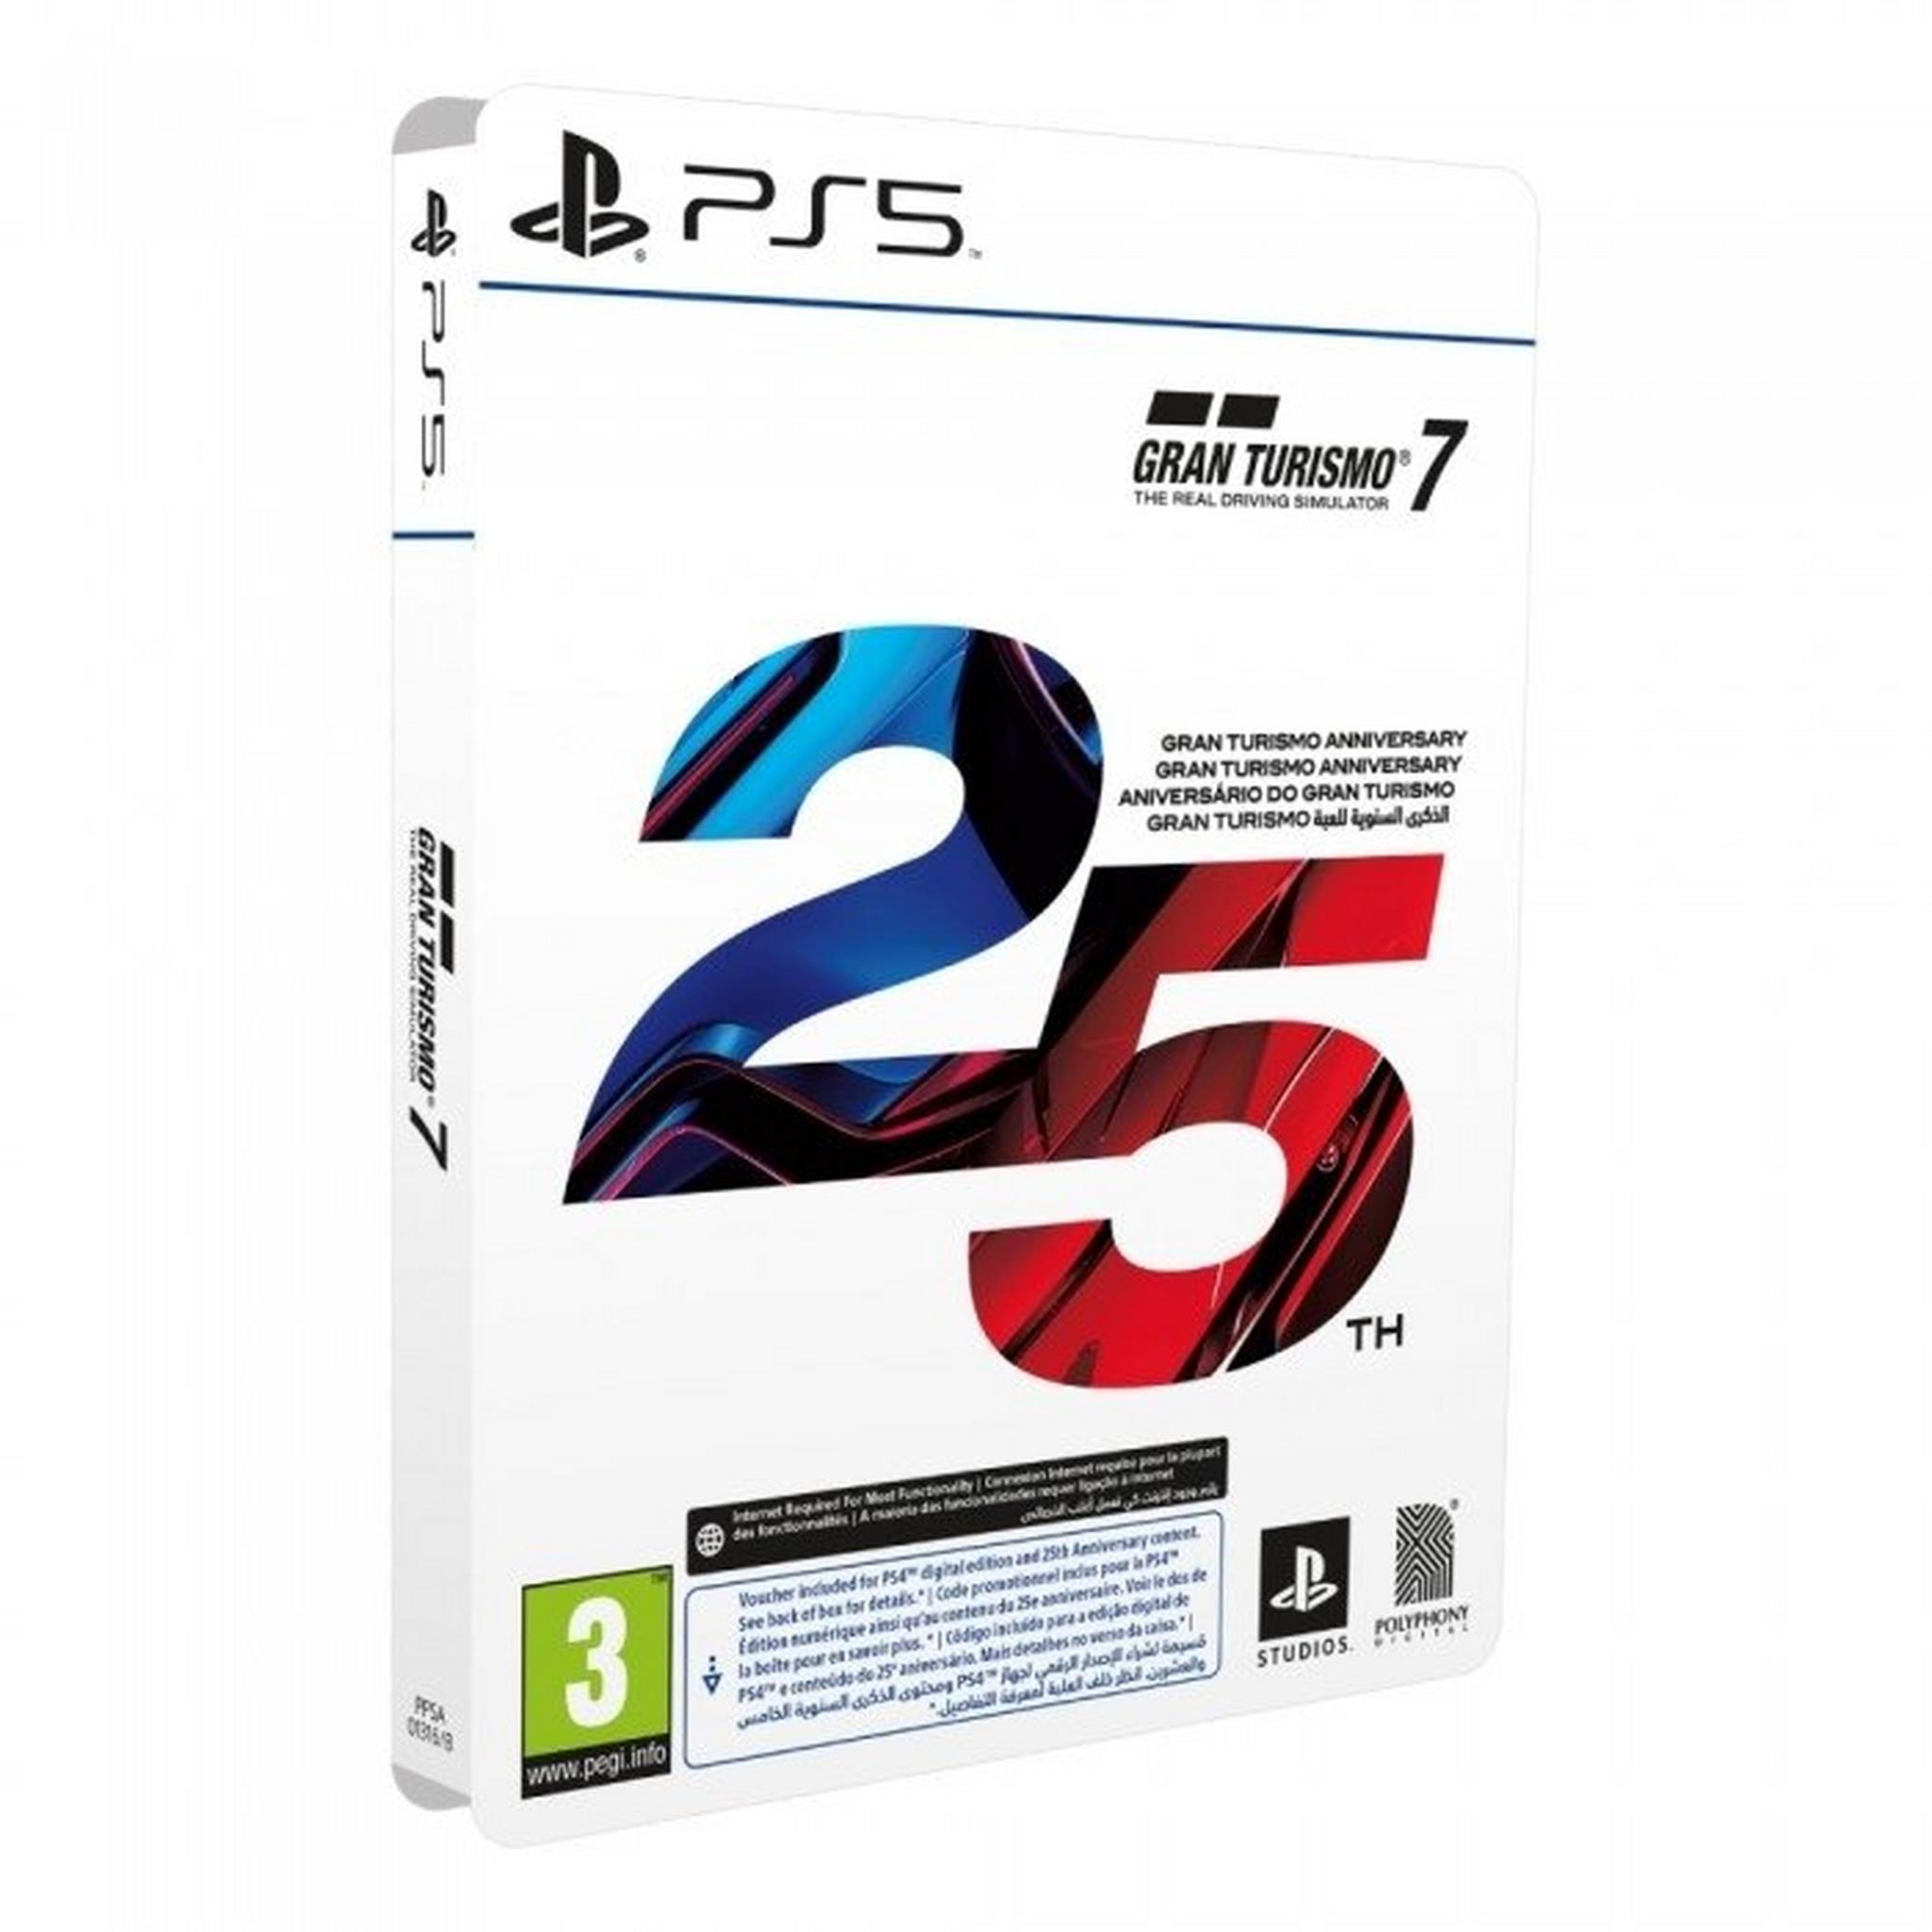 Gran Turismo 7 - 25th Anniversary Edition - PS5 Game